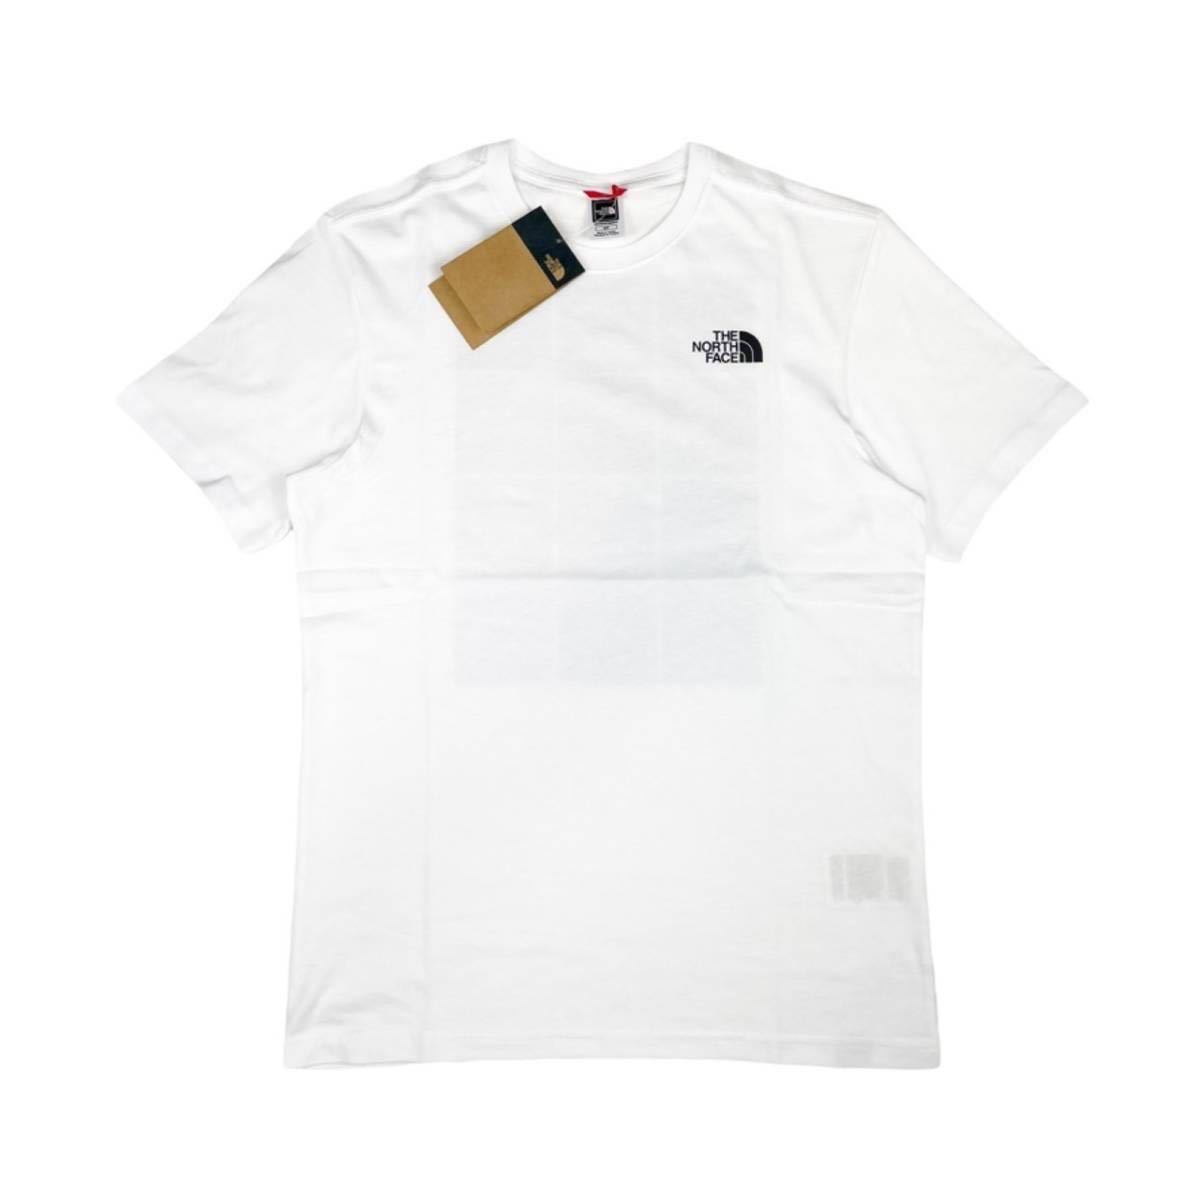 ザ ノースフェイス Tシャツ 半袖 メンズ レディース NF0A82EW バックロゴ 白 Lサイズ THE NORTH FACE S/S MOUNTAIN REPEAT LOGO TEE 新品